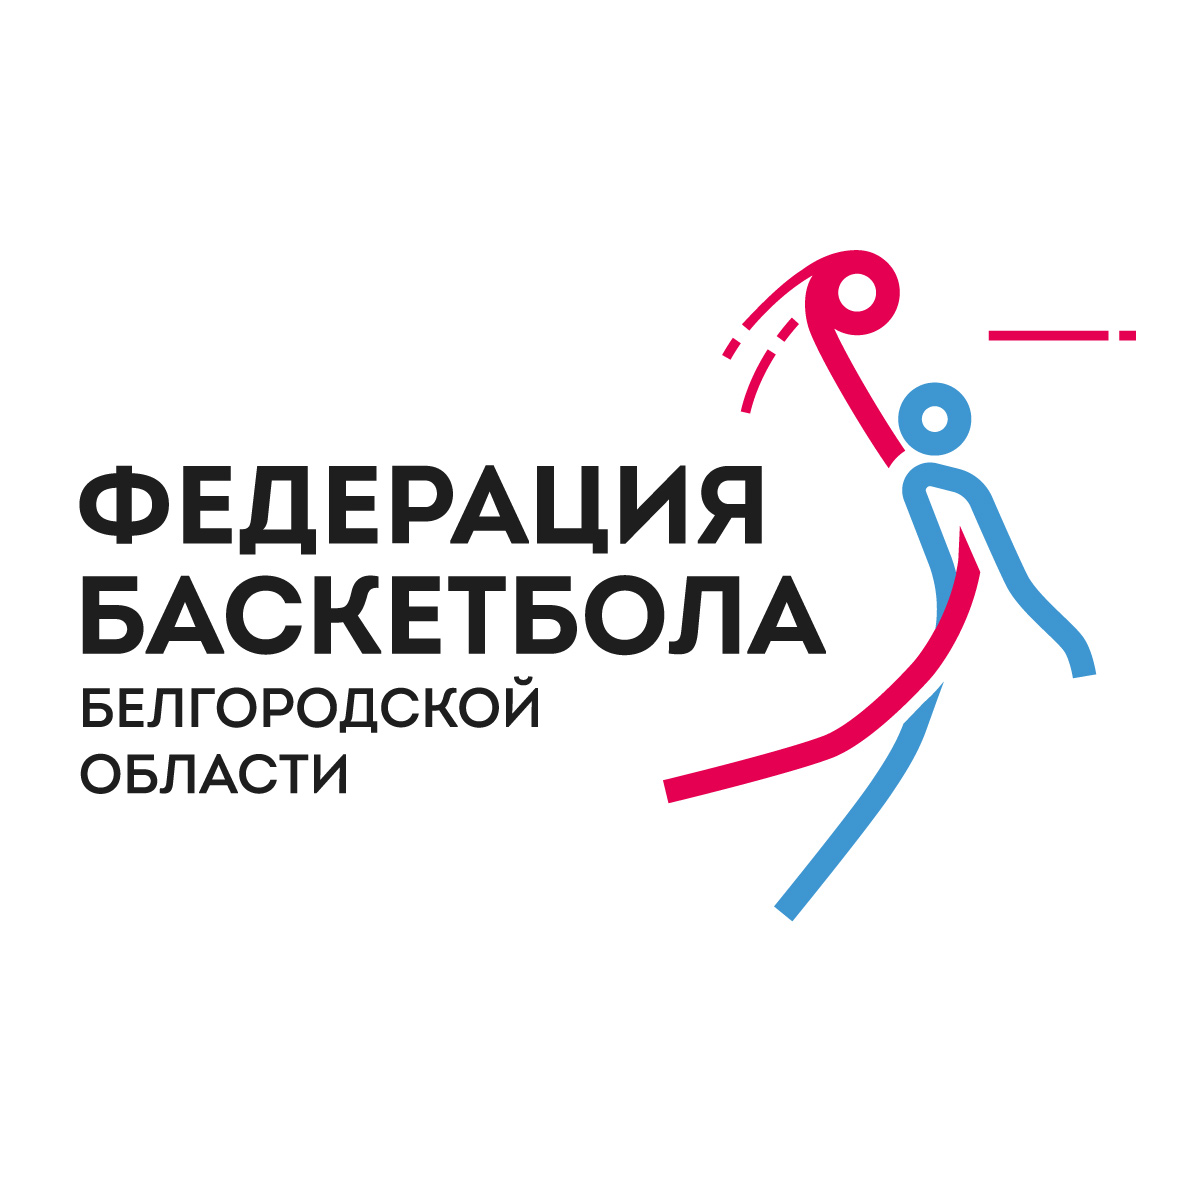 Фирменный стиль федерации баскетбола Белгородской области